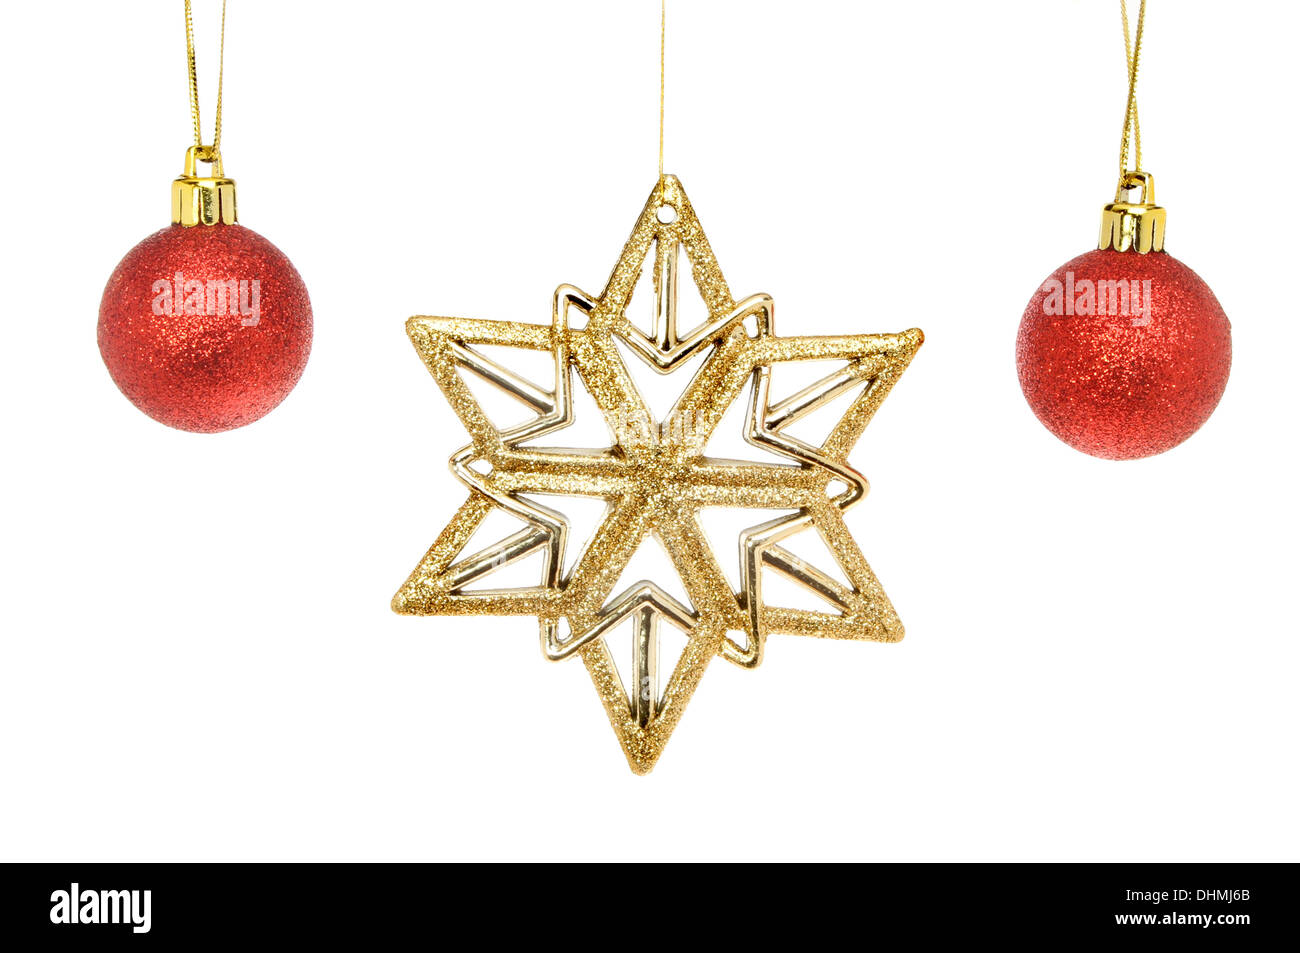 Gold glitter l'étoile de Noël et boules rouges isolés contre white Banque D'Images